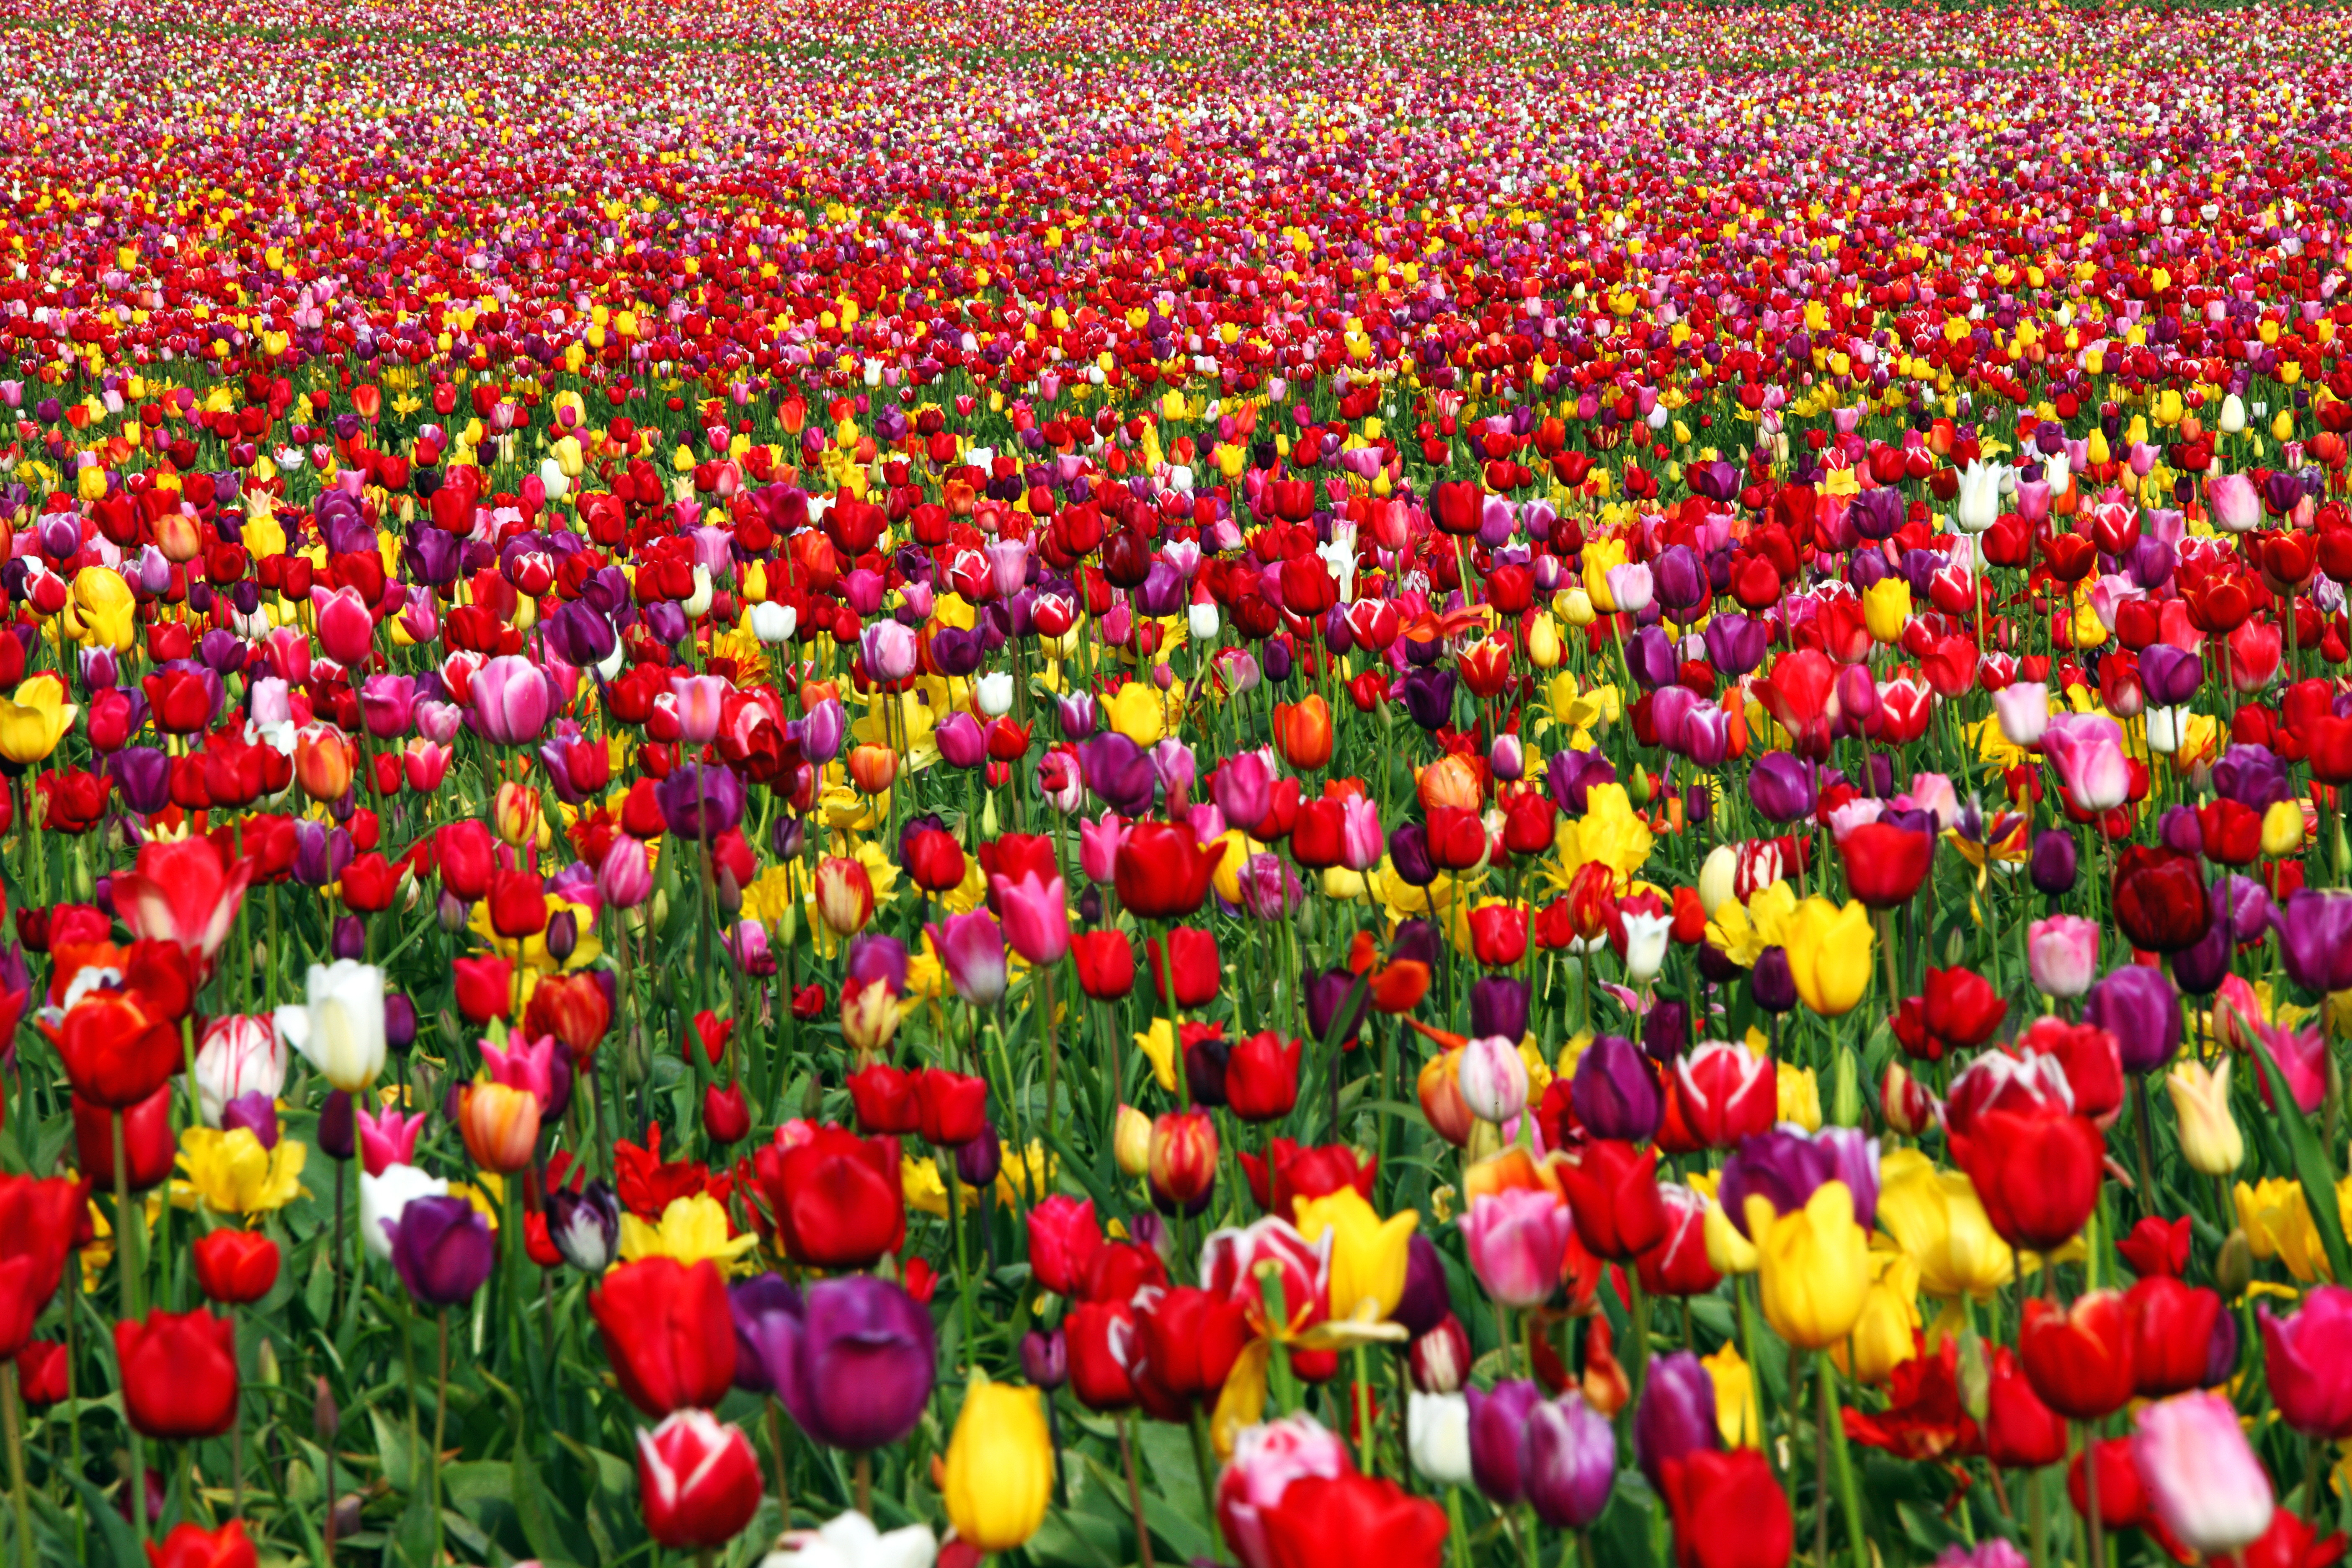 Bahor gullari. Иран тюльпановые поля. Фестиваль тюльпанов Istanbul Tulip Festival.